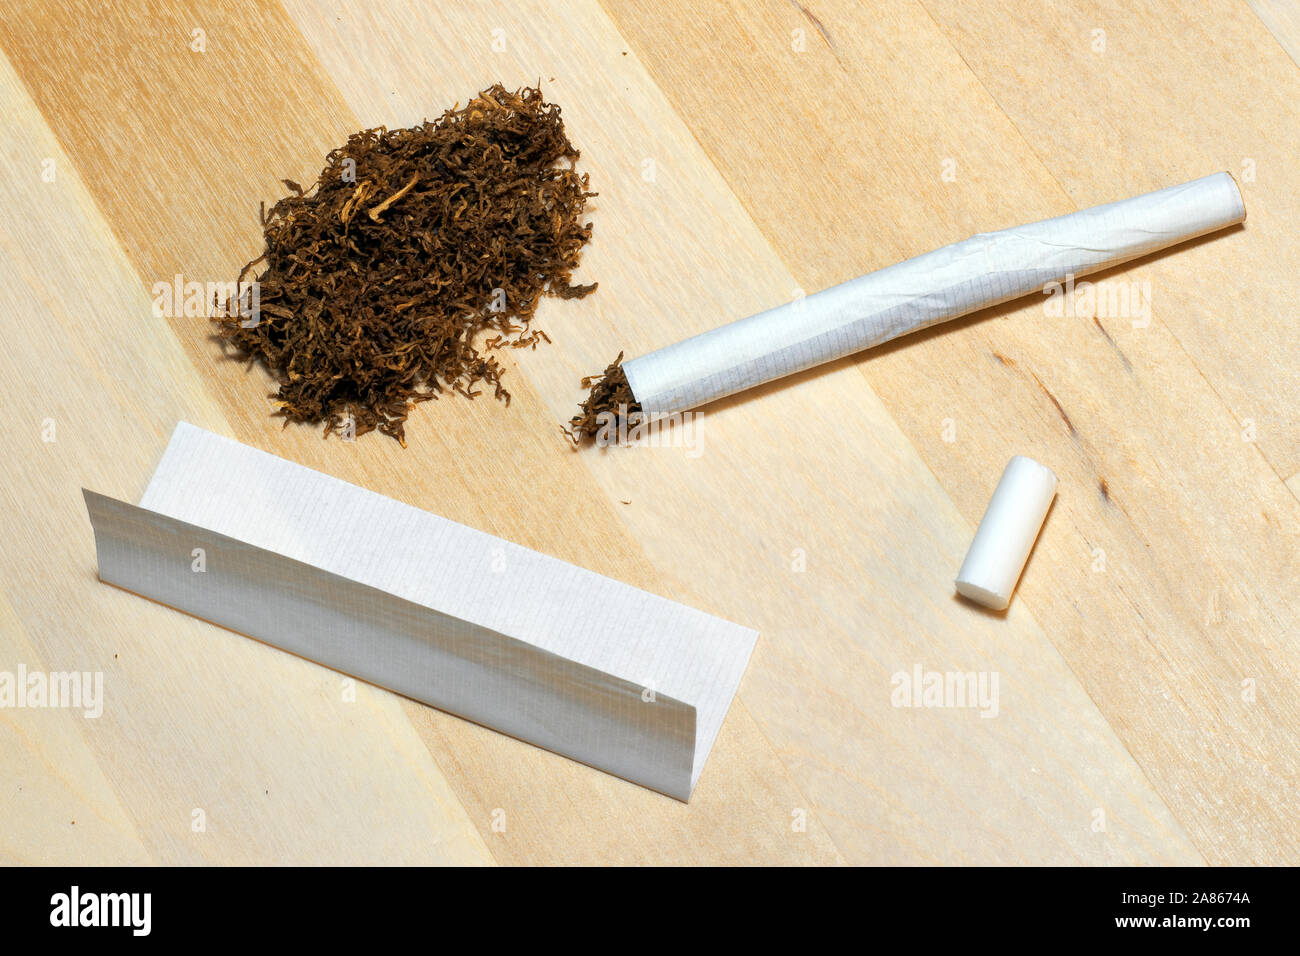 Rauchen Zubehör (Tabak, Papier einen Filter) für Rolling Zigarette auf  Holz- Hintergrund Stockfotografie - Alamy